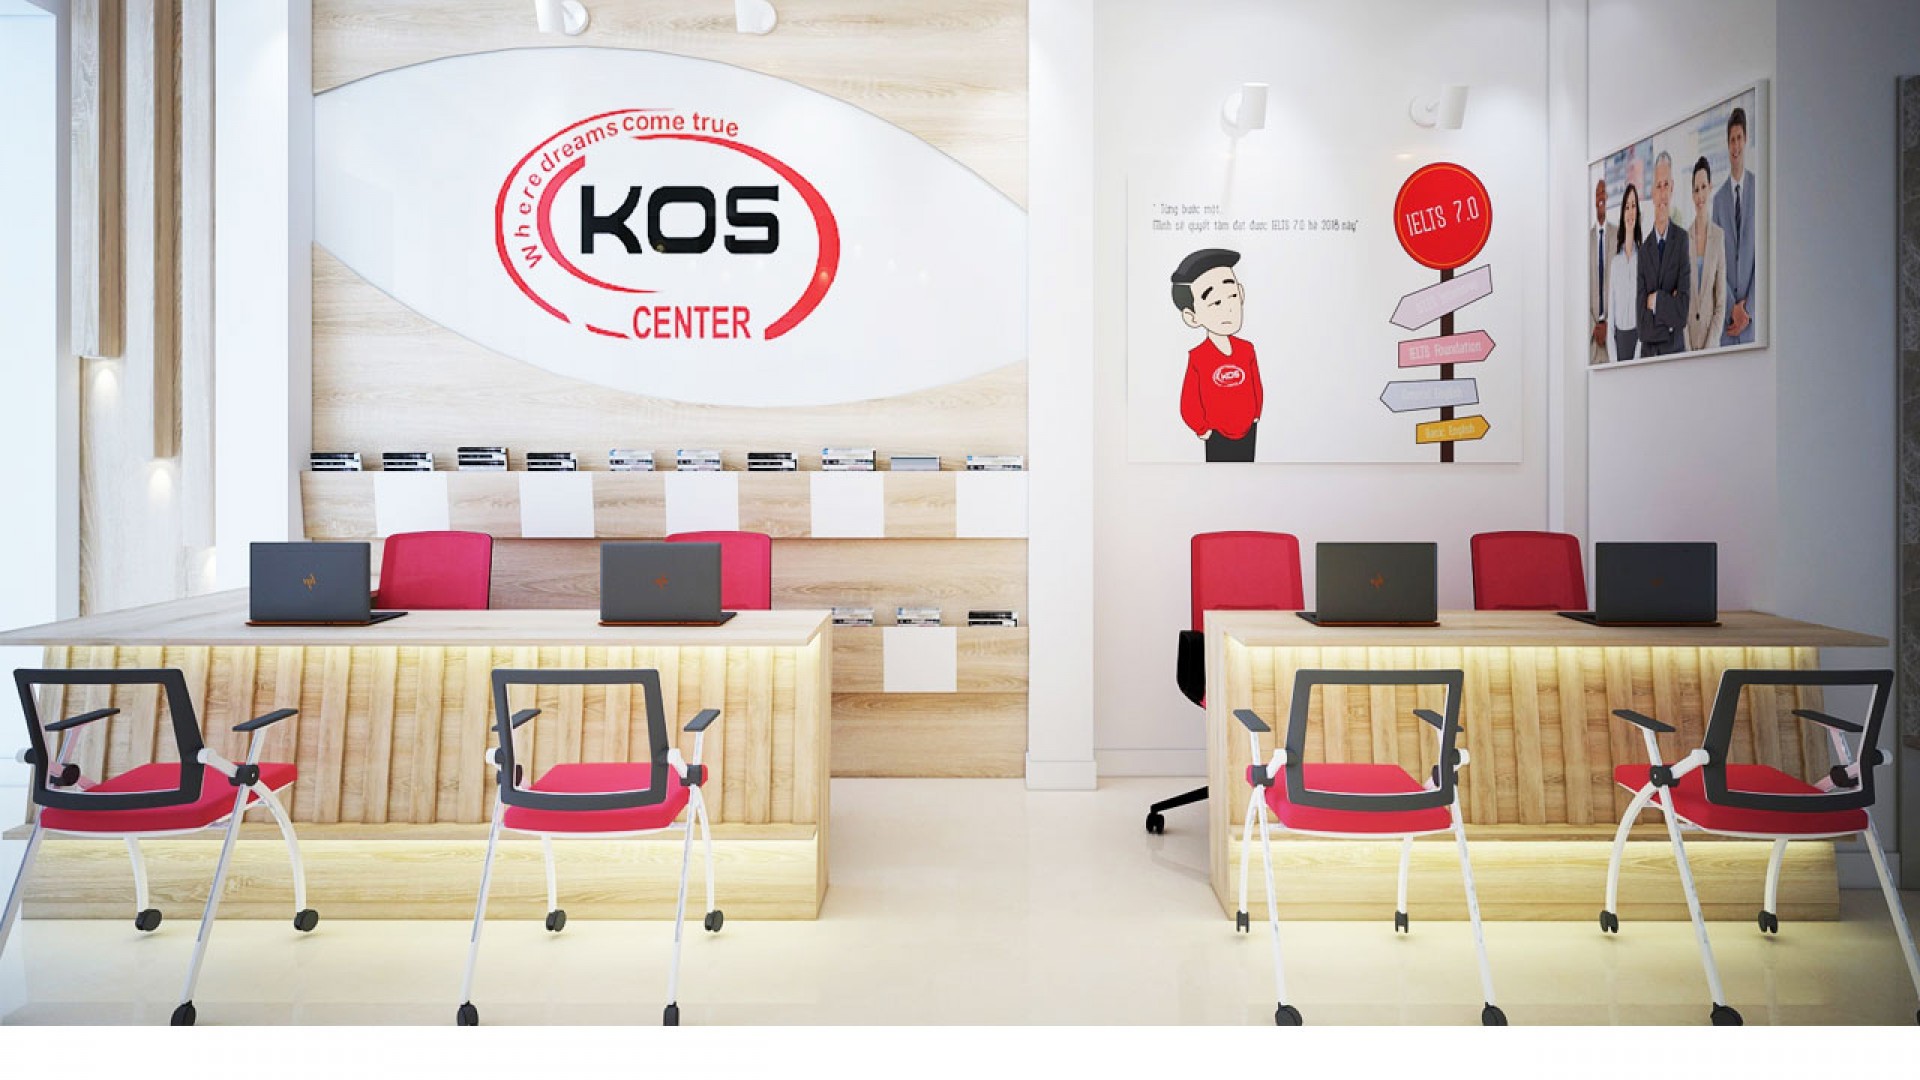 Tìm kiếm trung tâm luyện thi IELTS giá rẻ tại quận Hoàn Kiếm, không thể bỏ qua KOS!